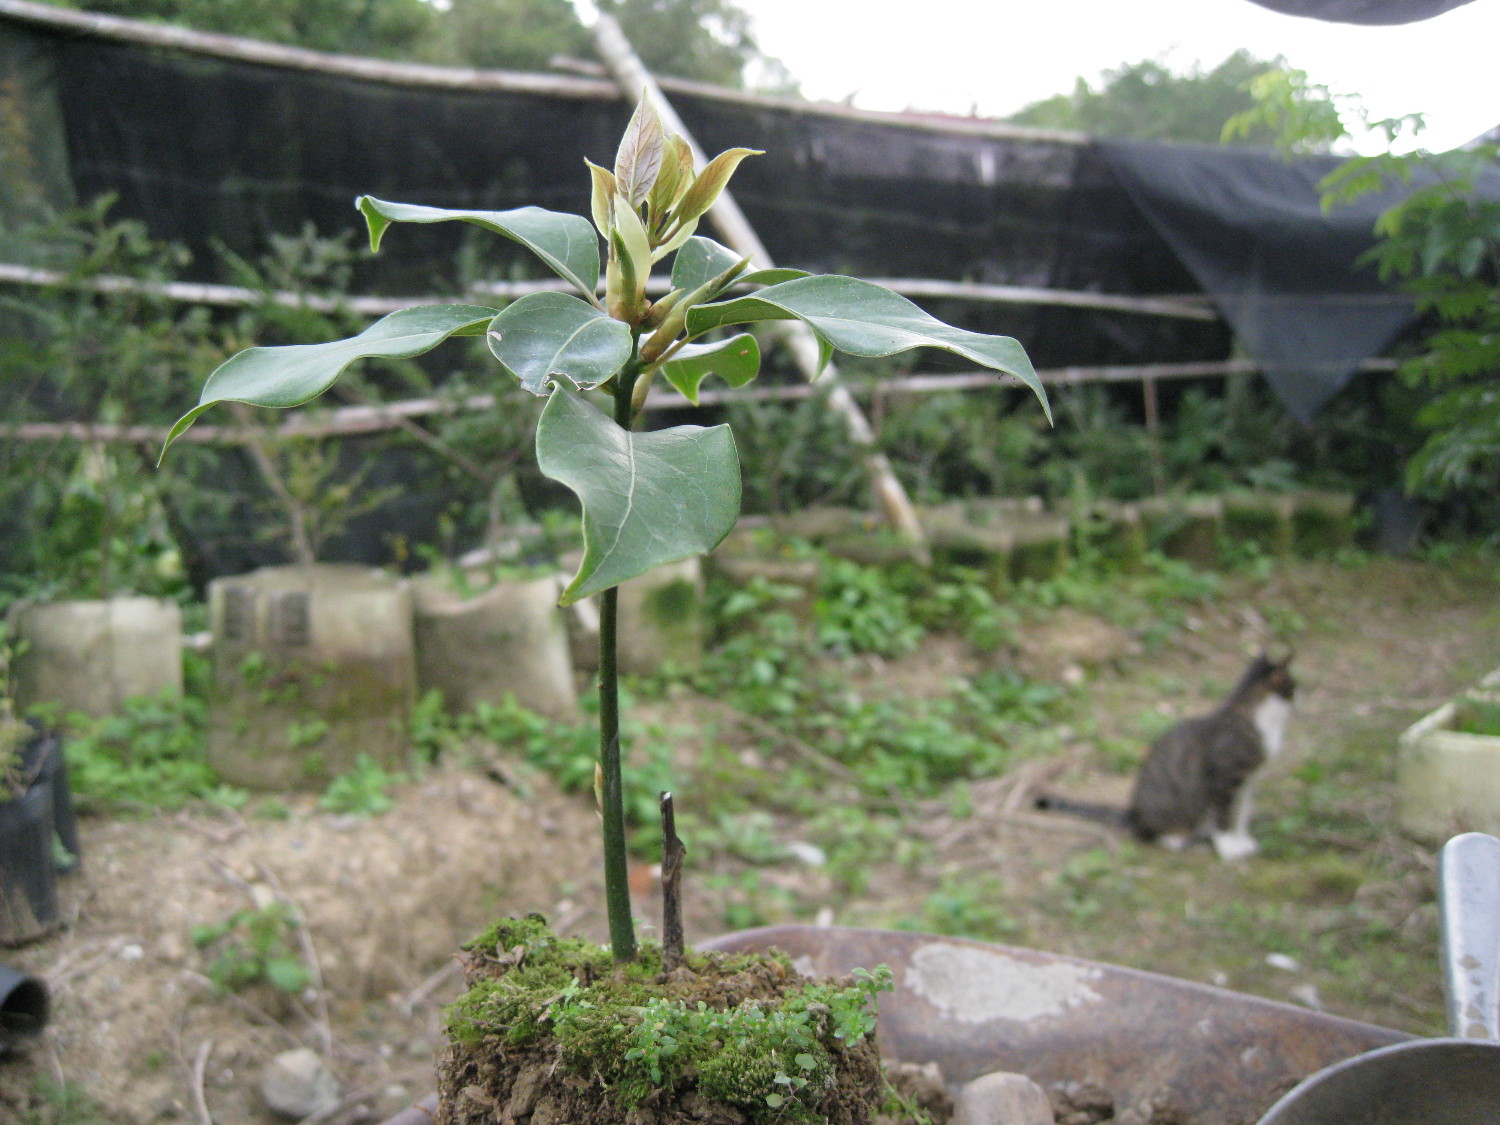 牛樟( Cinnamomum kanehirai Hay ) 扦插苗  